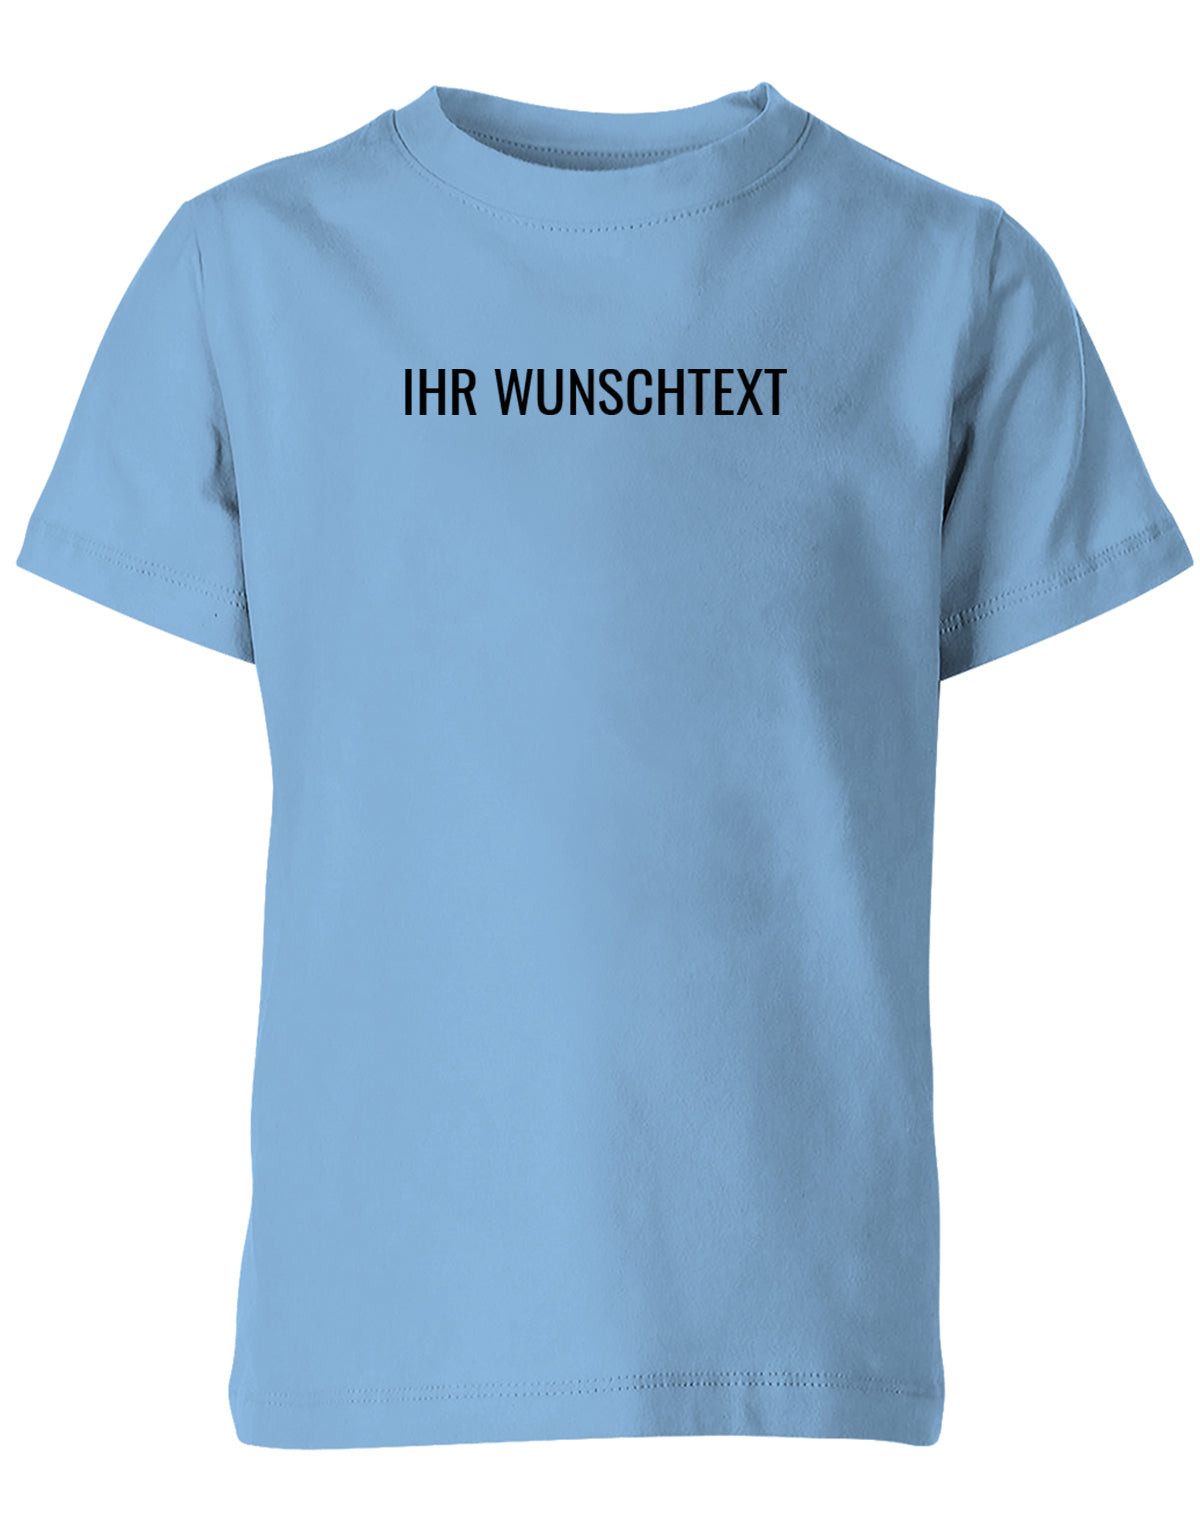 Kinder Tshirt mit Wunschtext.  Minimalistisches Design. Hellblau